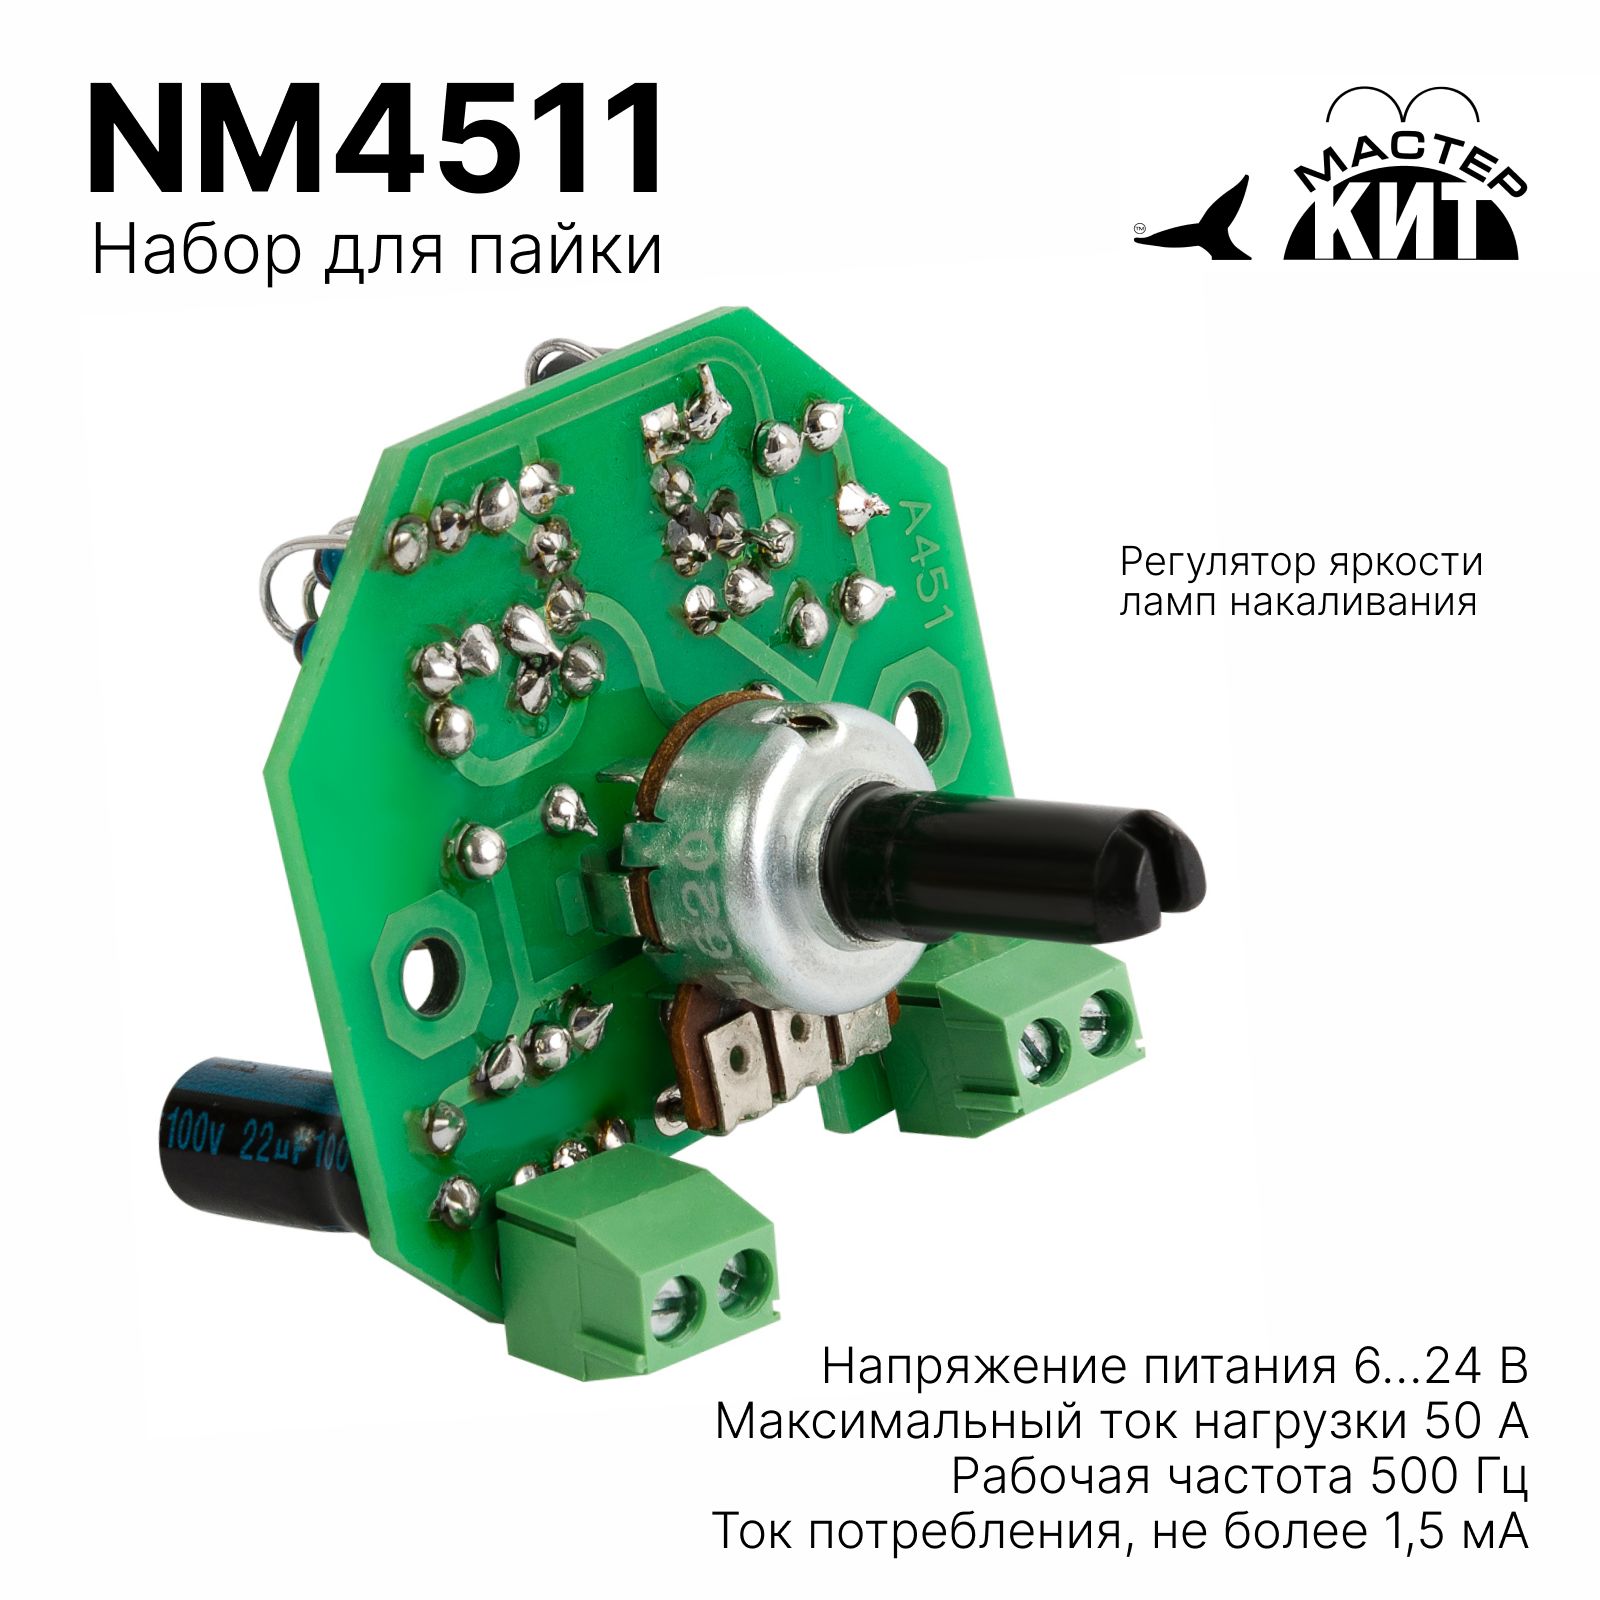 Регулятор яркости ламп накаливания 12 В/50 А NM4511/BM4511